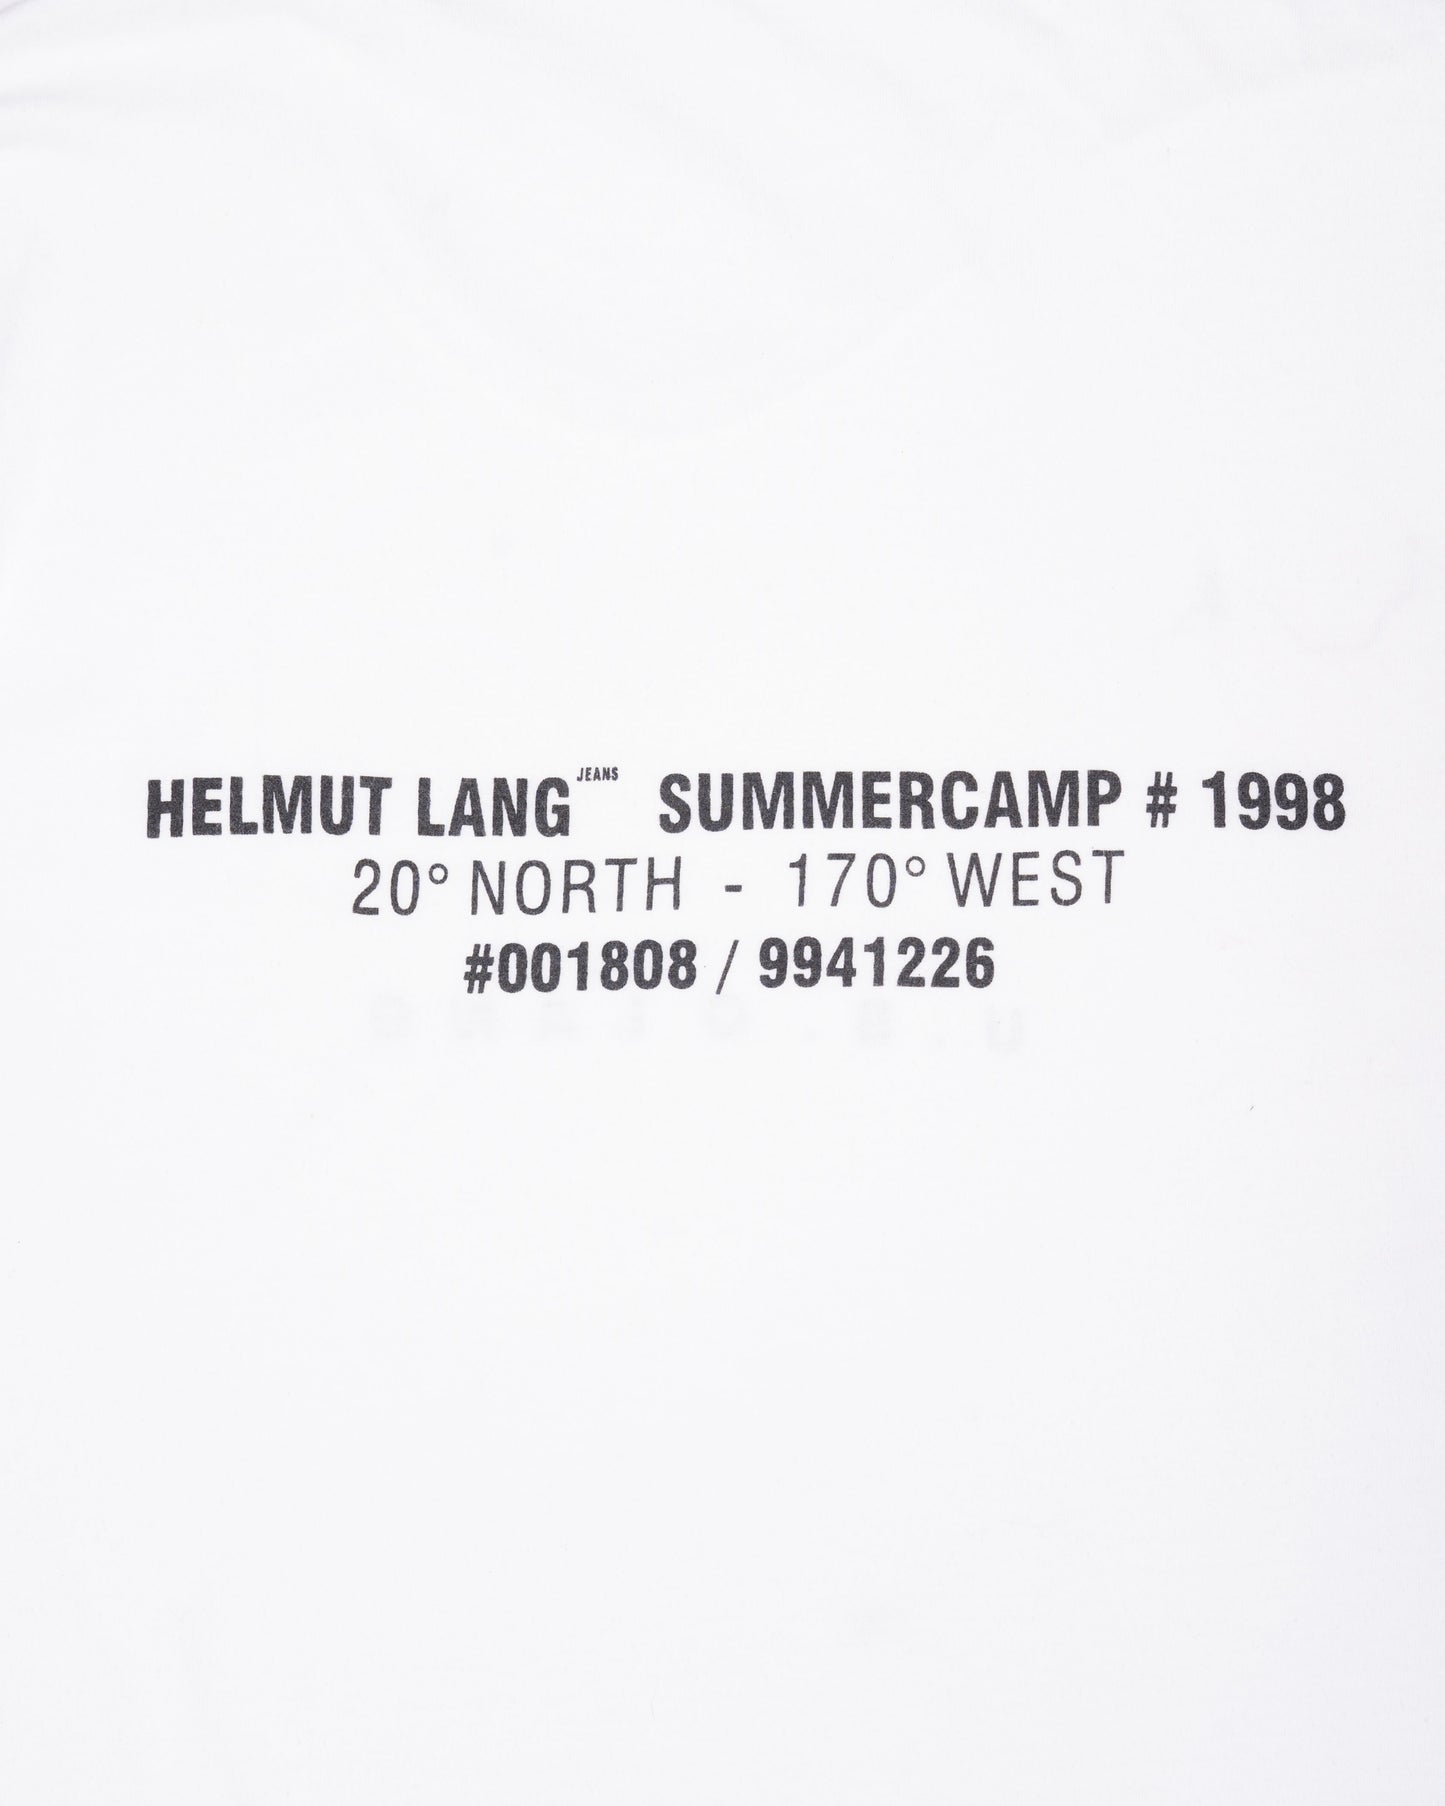 Helmut Lang SS1998 Summercamp Tee